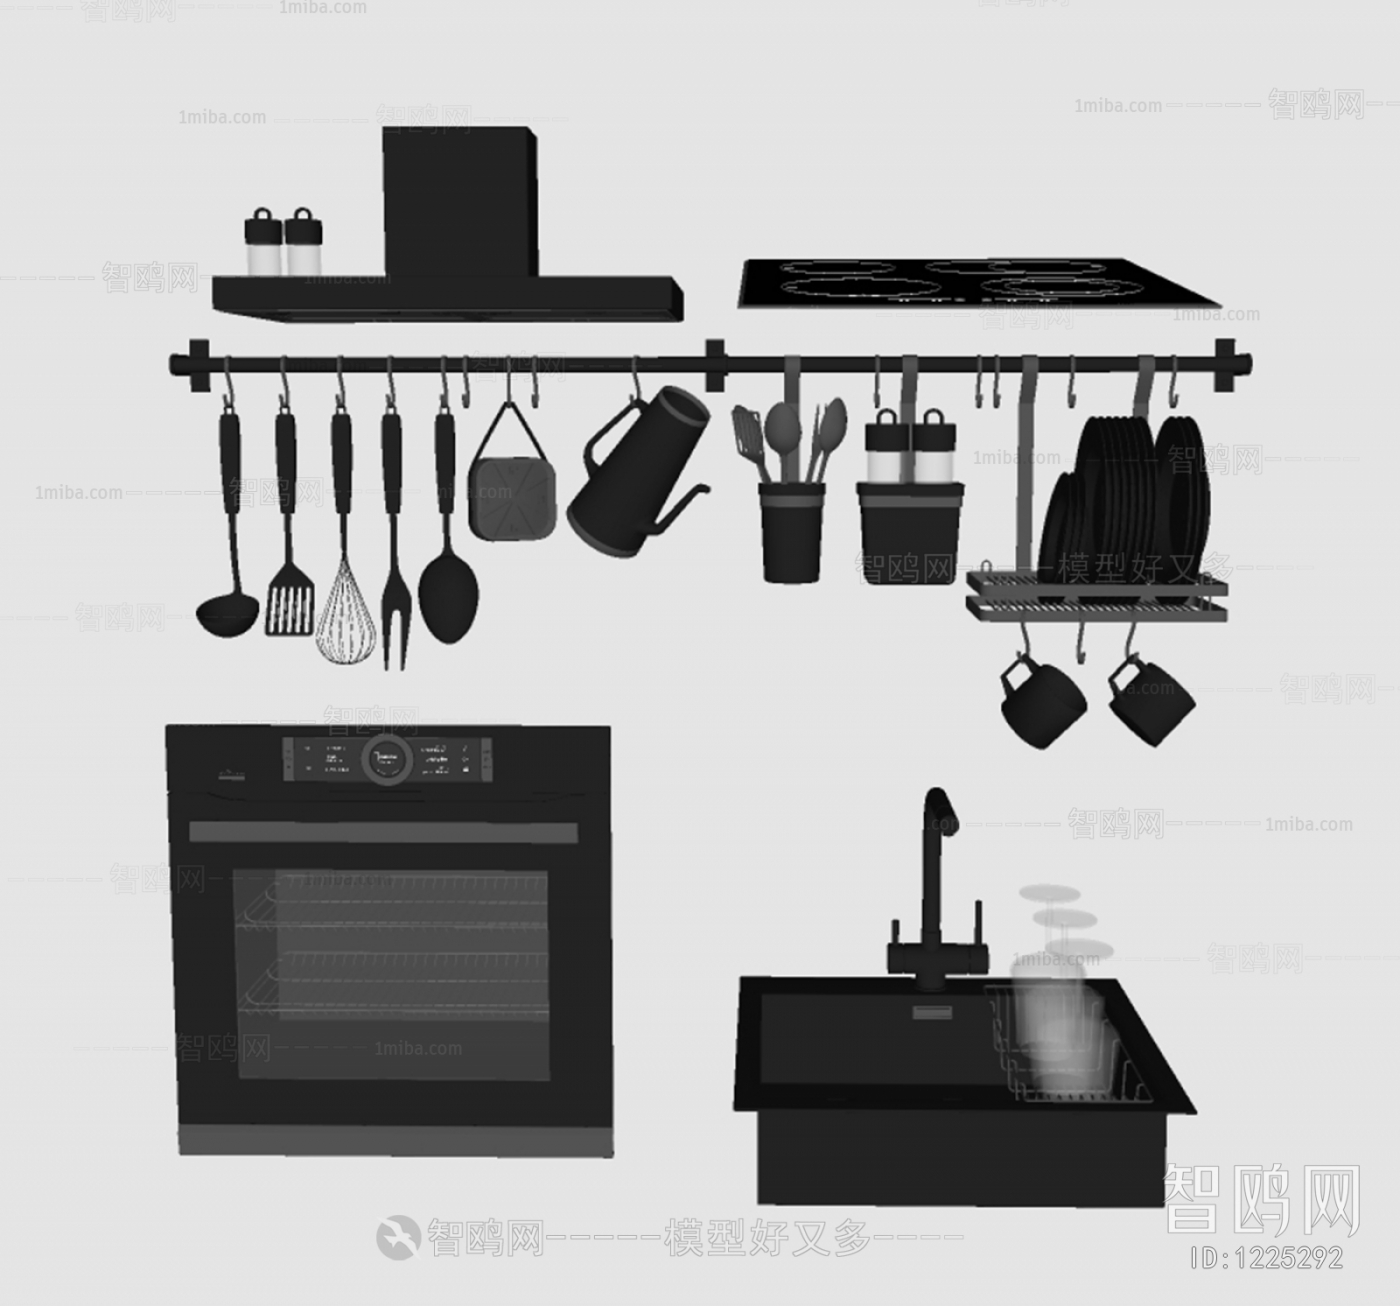 Modern Electric Kitchen Appliances